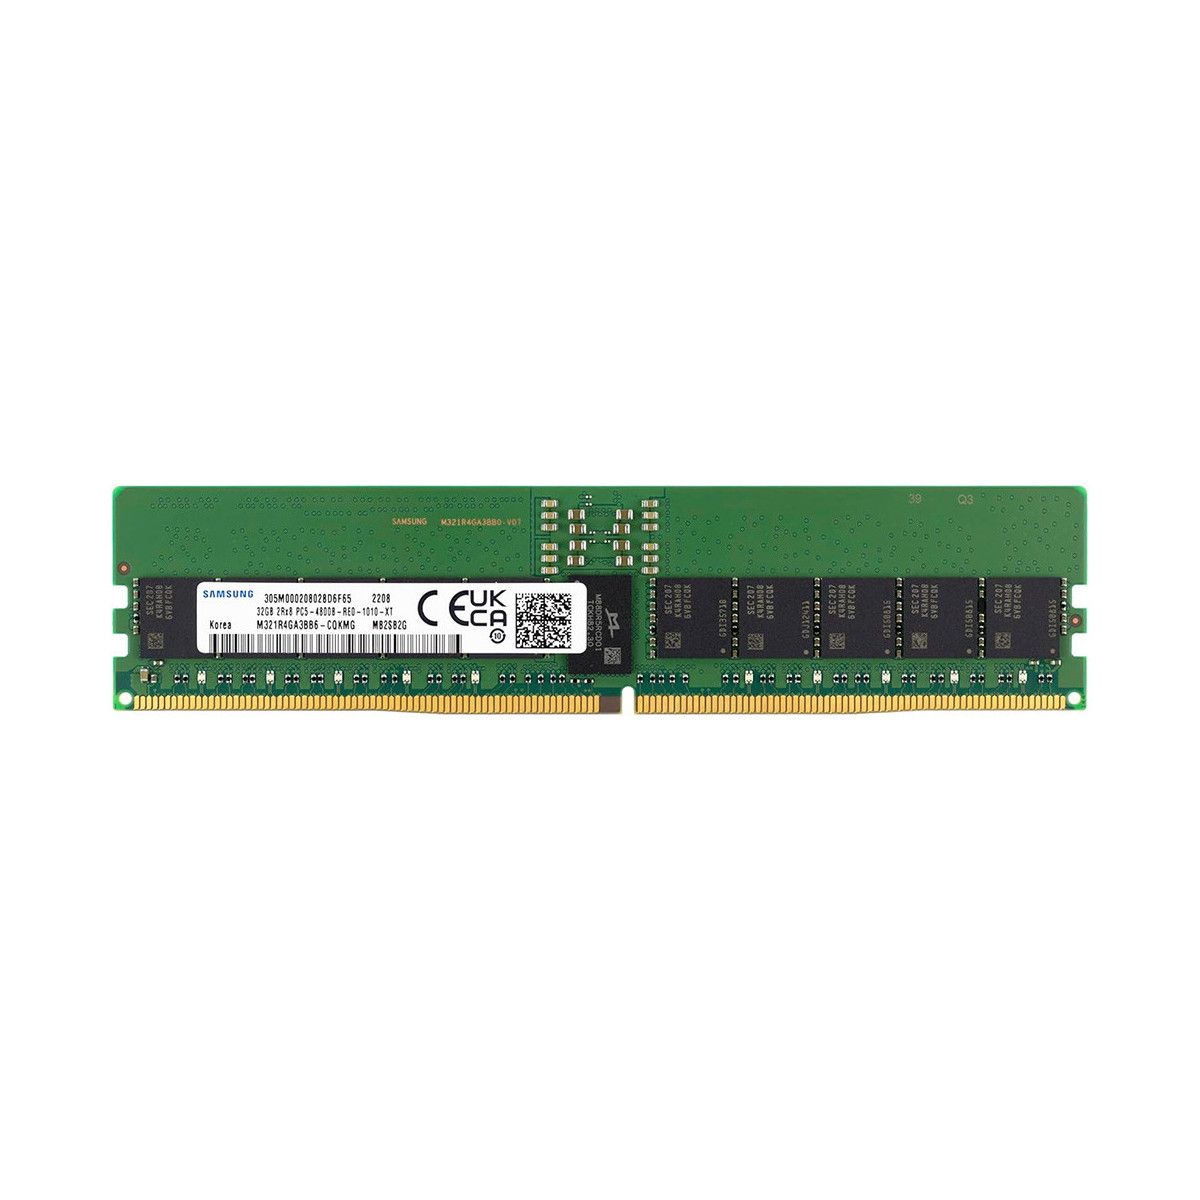 SNPW08W9C/32G-MS - Memstar 1x 32GB DDR5-4800 RDIMM PC5-38400R - Mem-Star Kompatibel OEM Speichermedien 1 - Memstar 